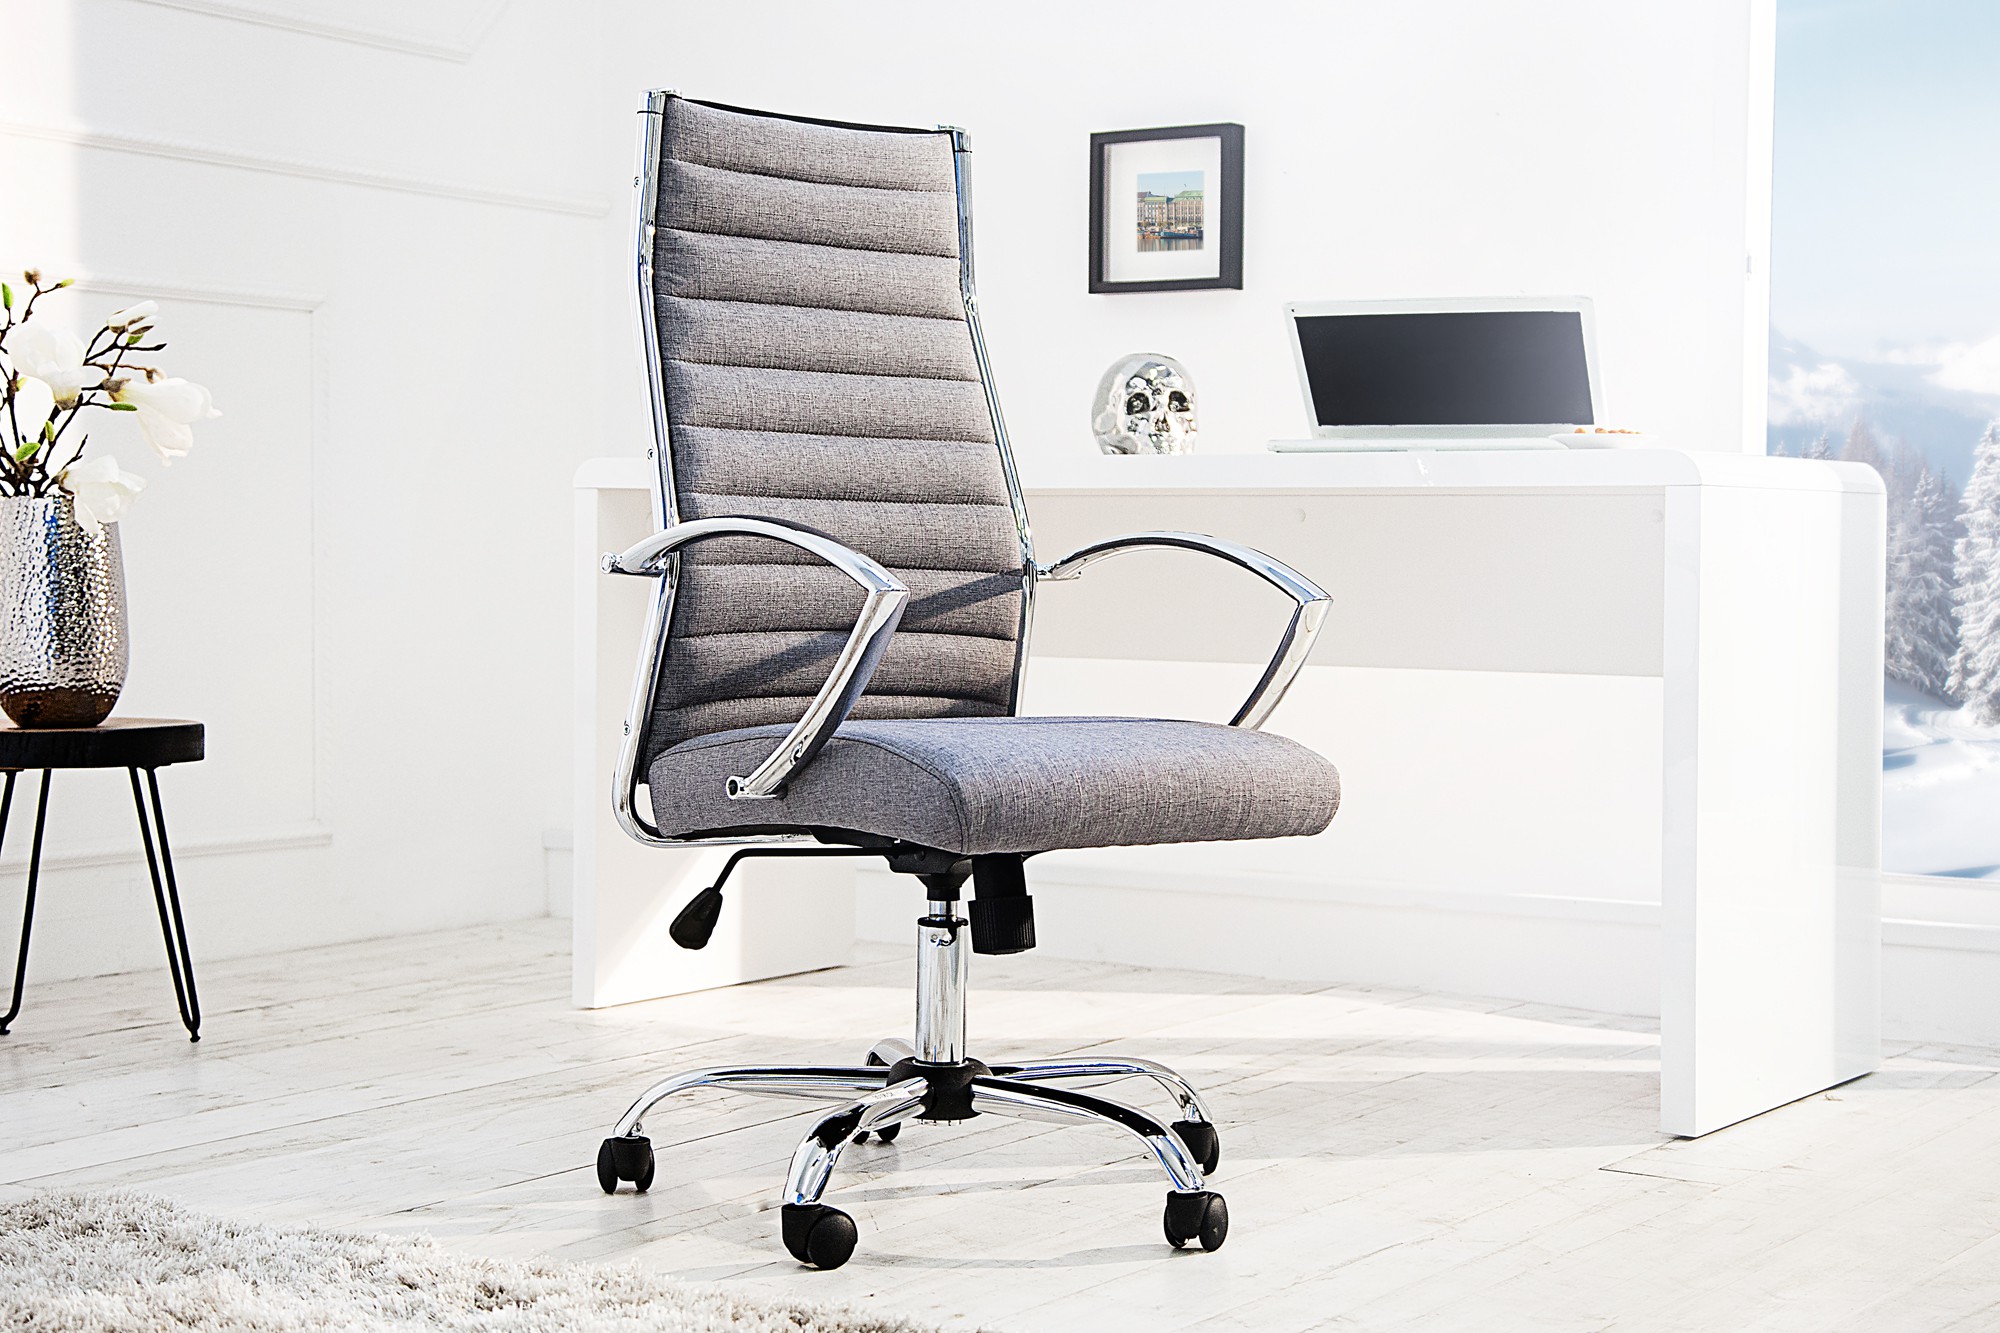 Estila Moderná kancelárska stolička Big Deal v sivej farbe s kovovou konštrukciou s nastaviteľnou výškou 107-117cm